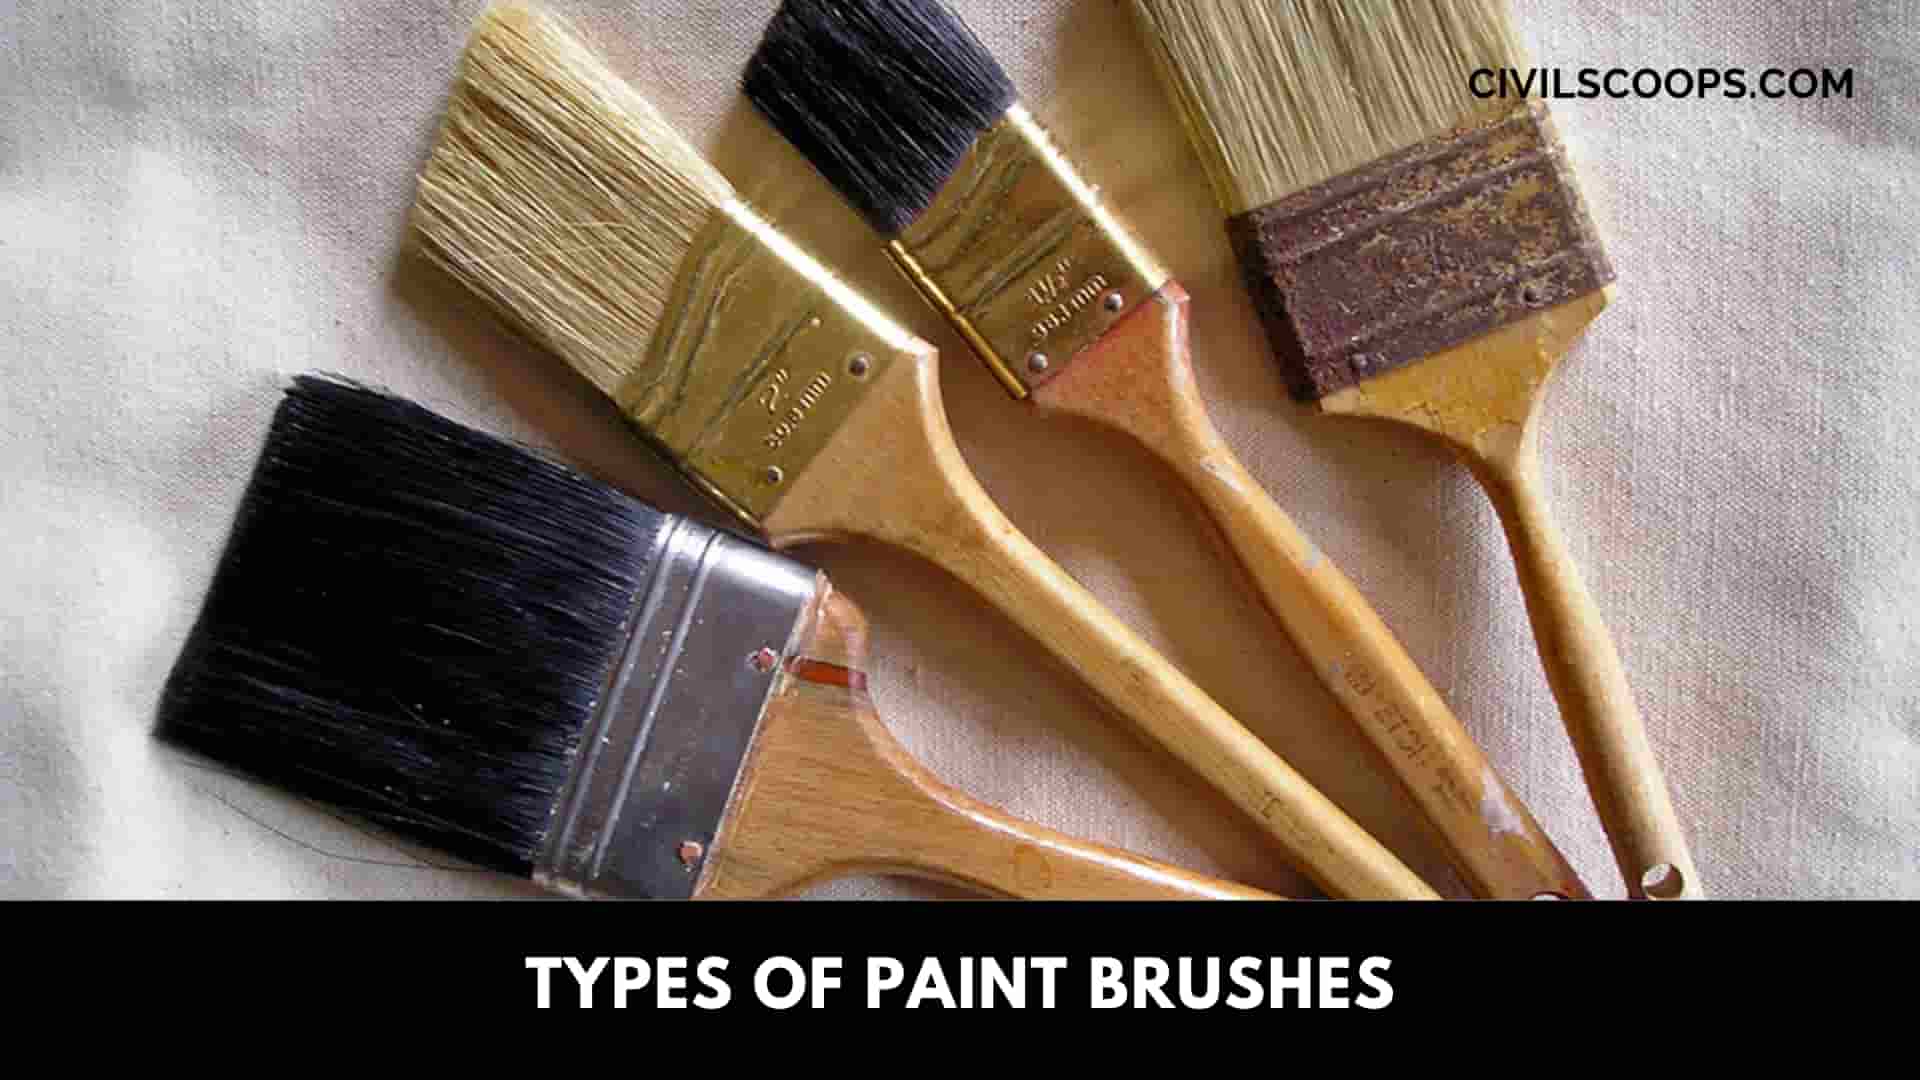 Types of Paintbrushes